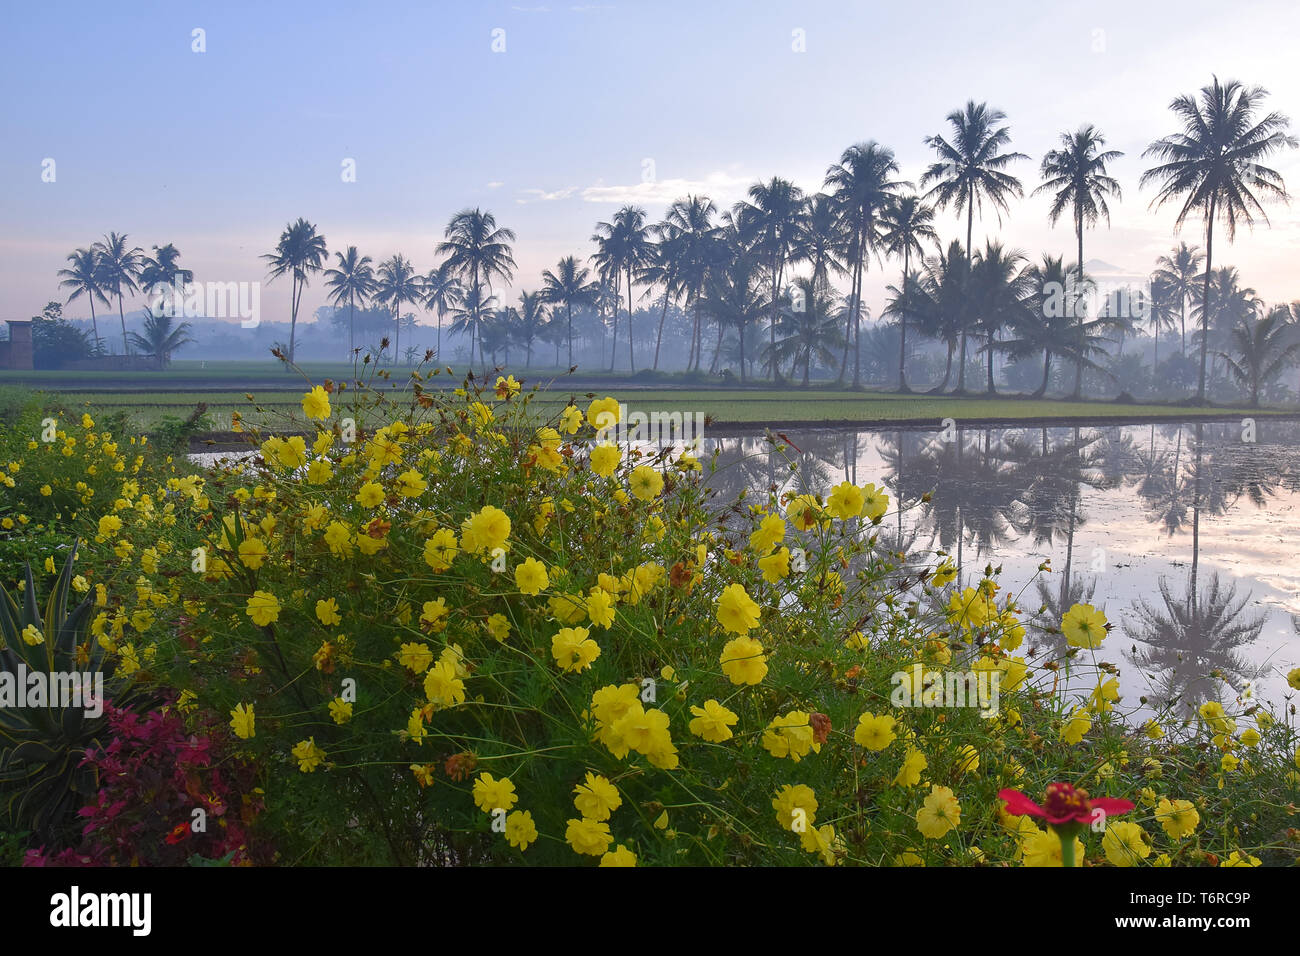 Hermoso paisaje de la aldea, los campos de los agricultores, el tramo de árboles de coco y coloridas flores Foto de stock